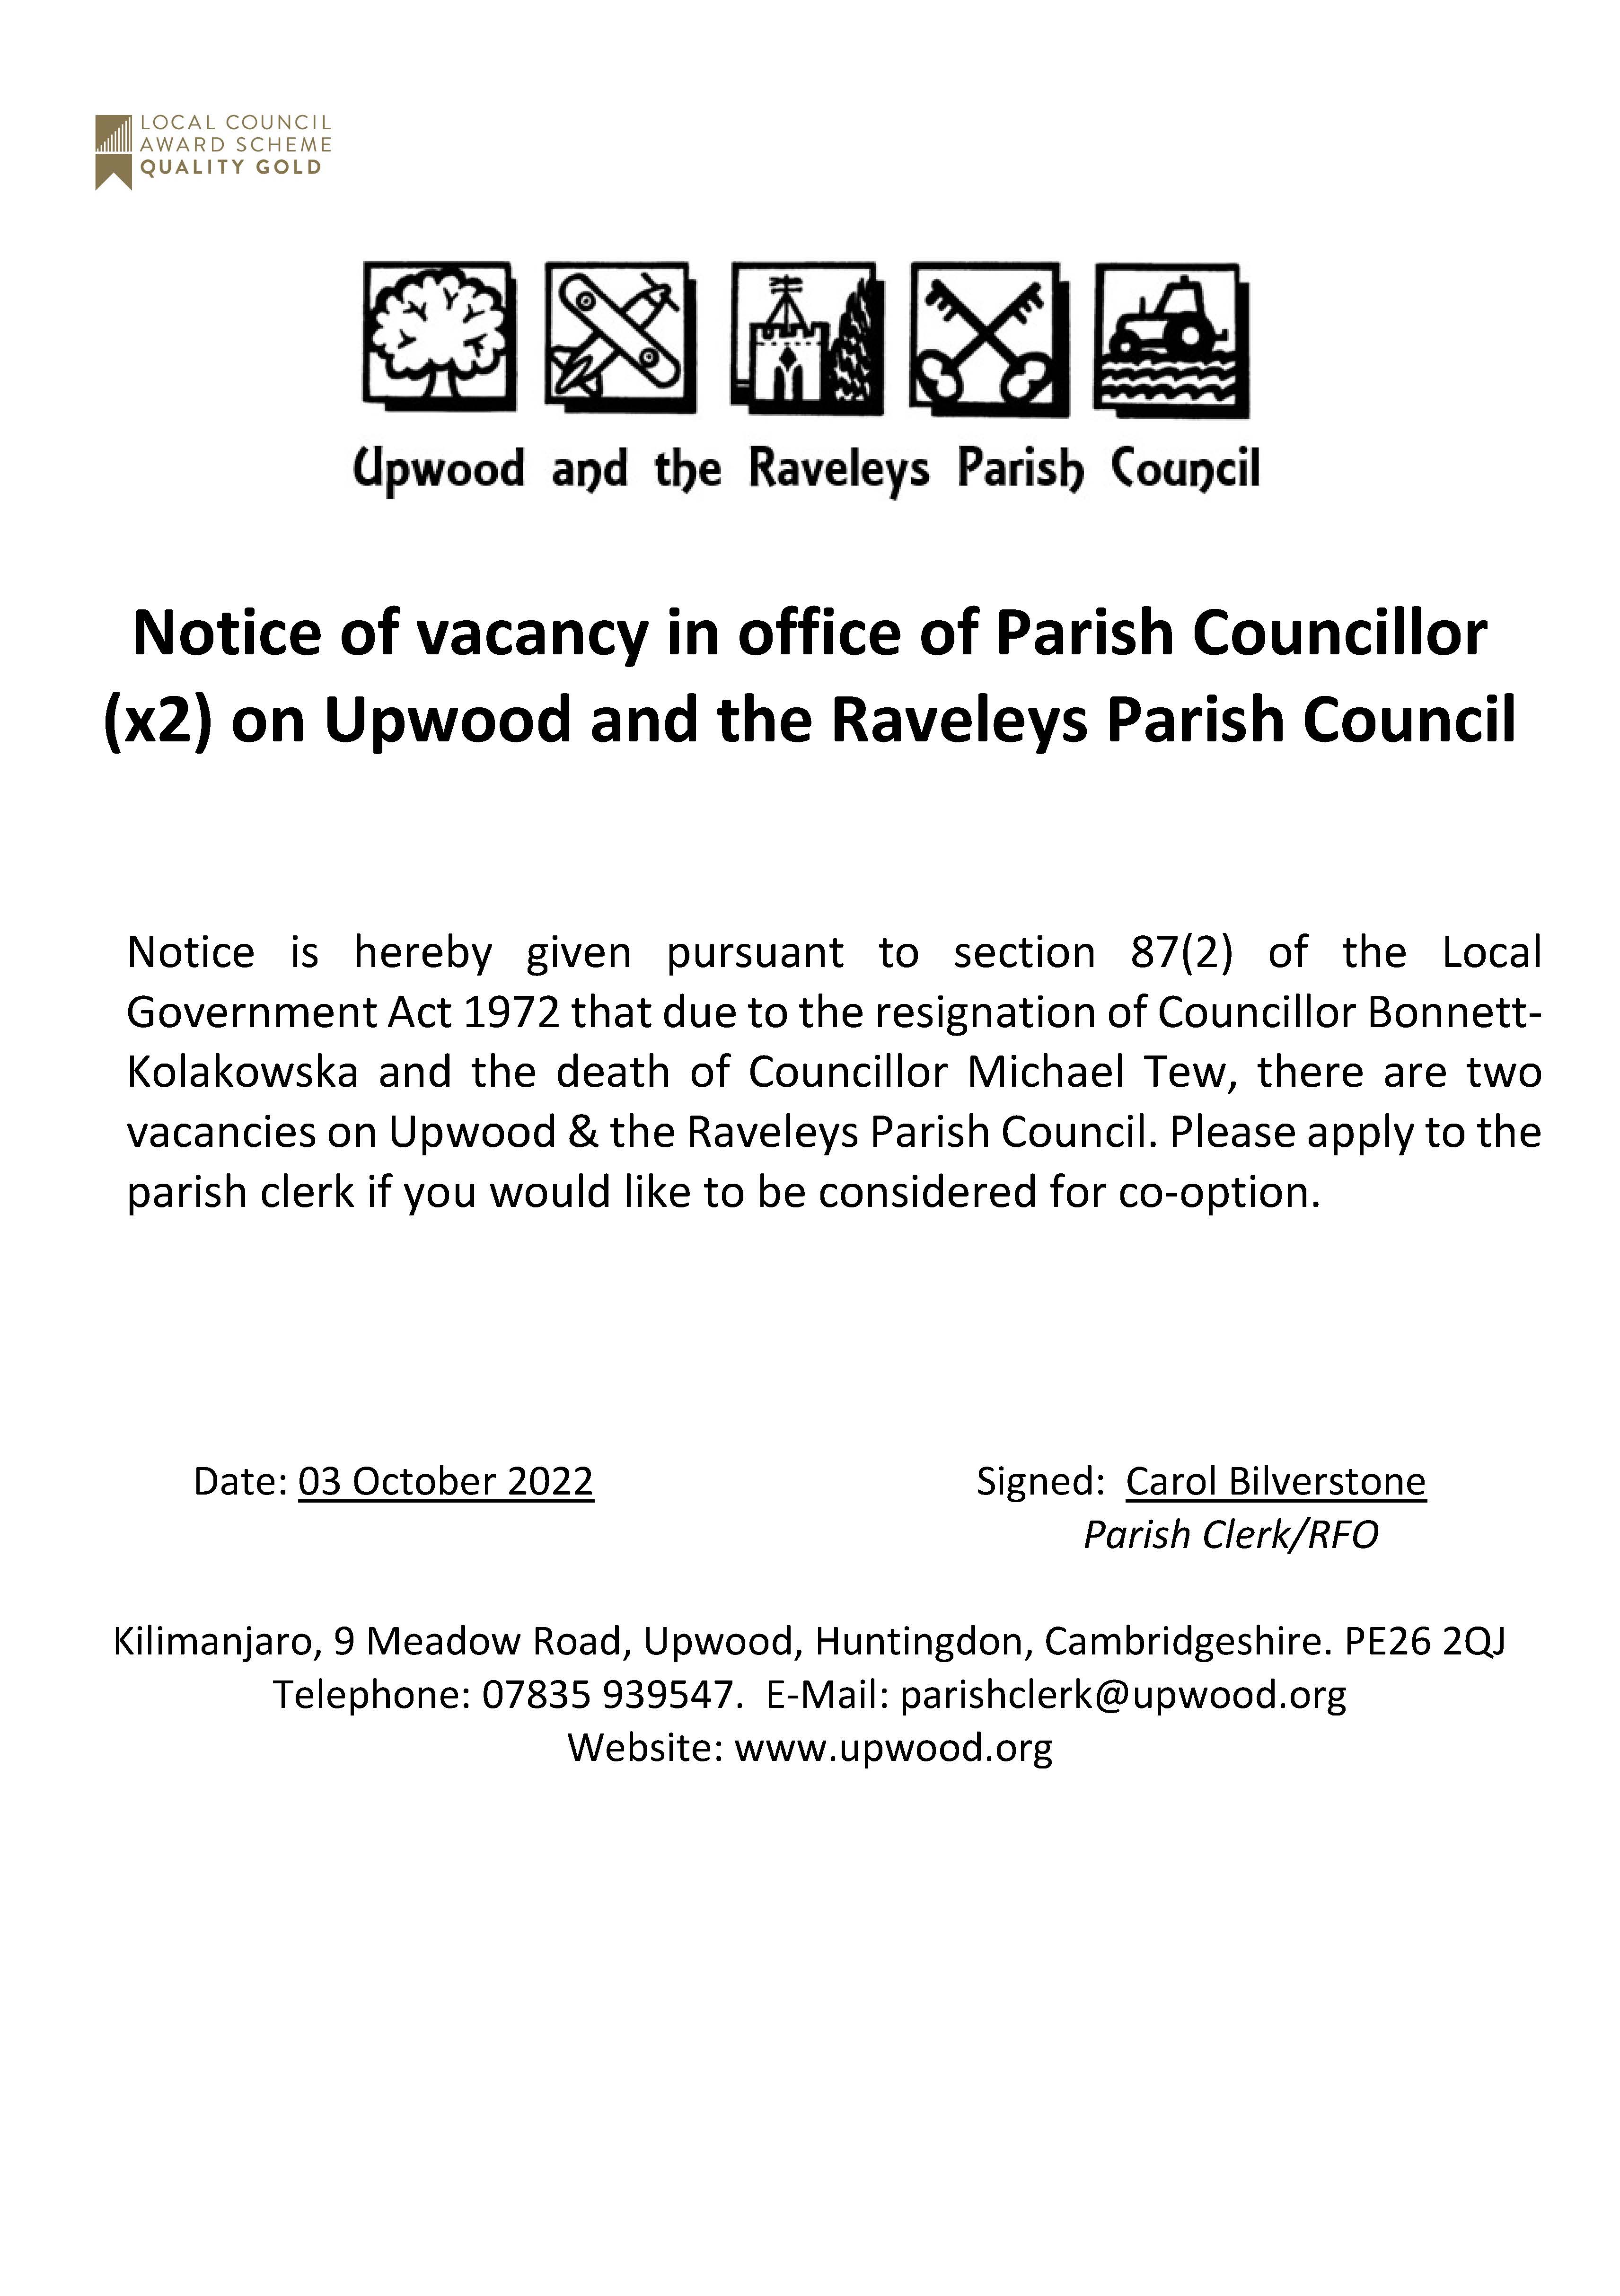 Notice of Vacancy for a Parish Councillor. 03.10.22